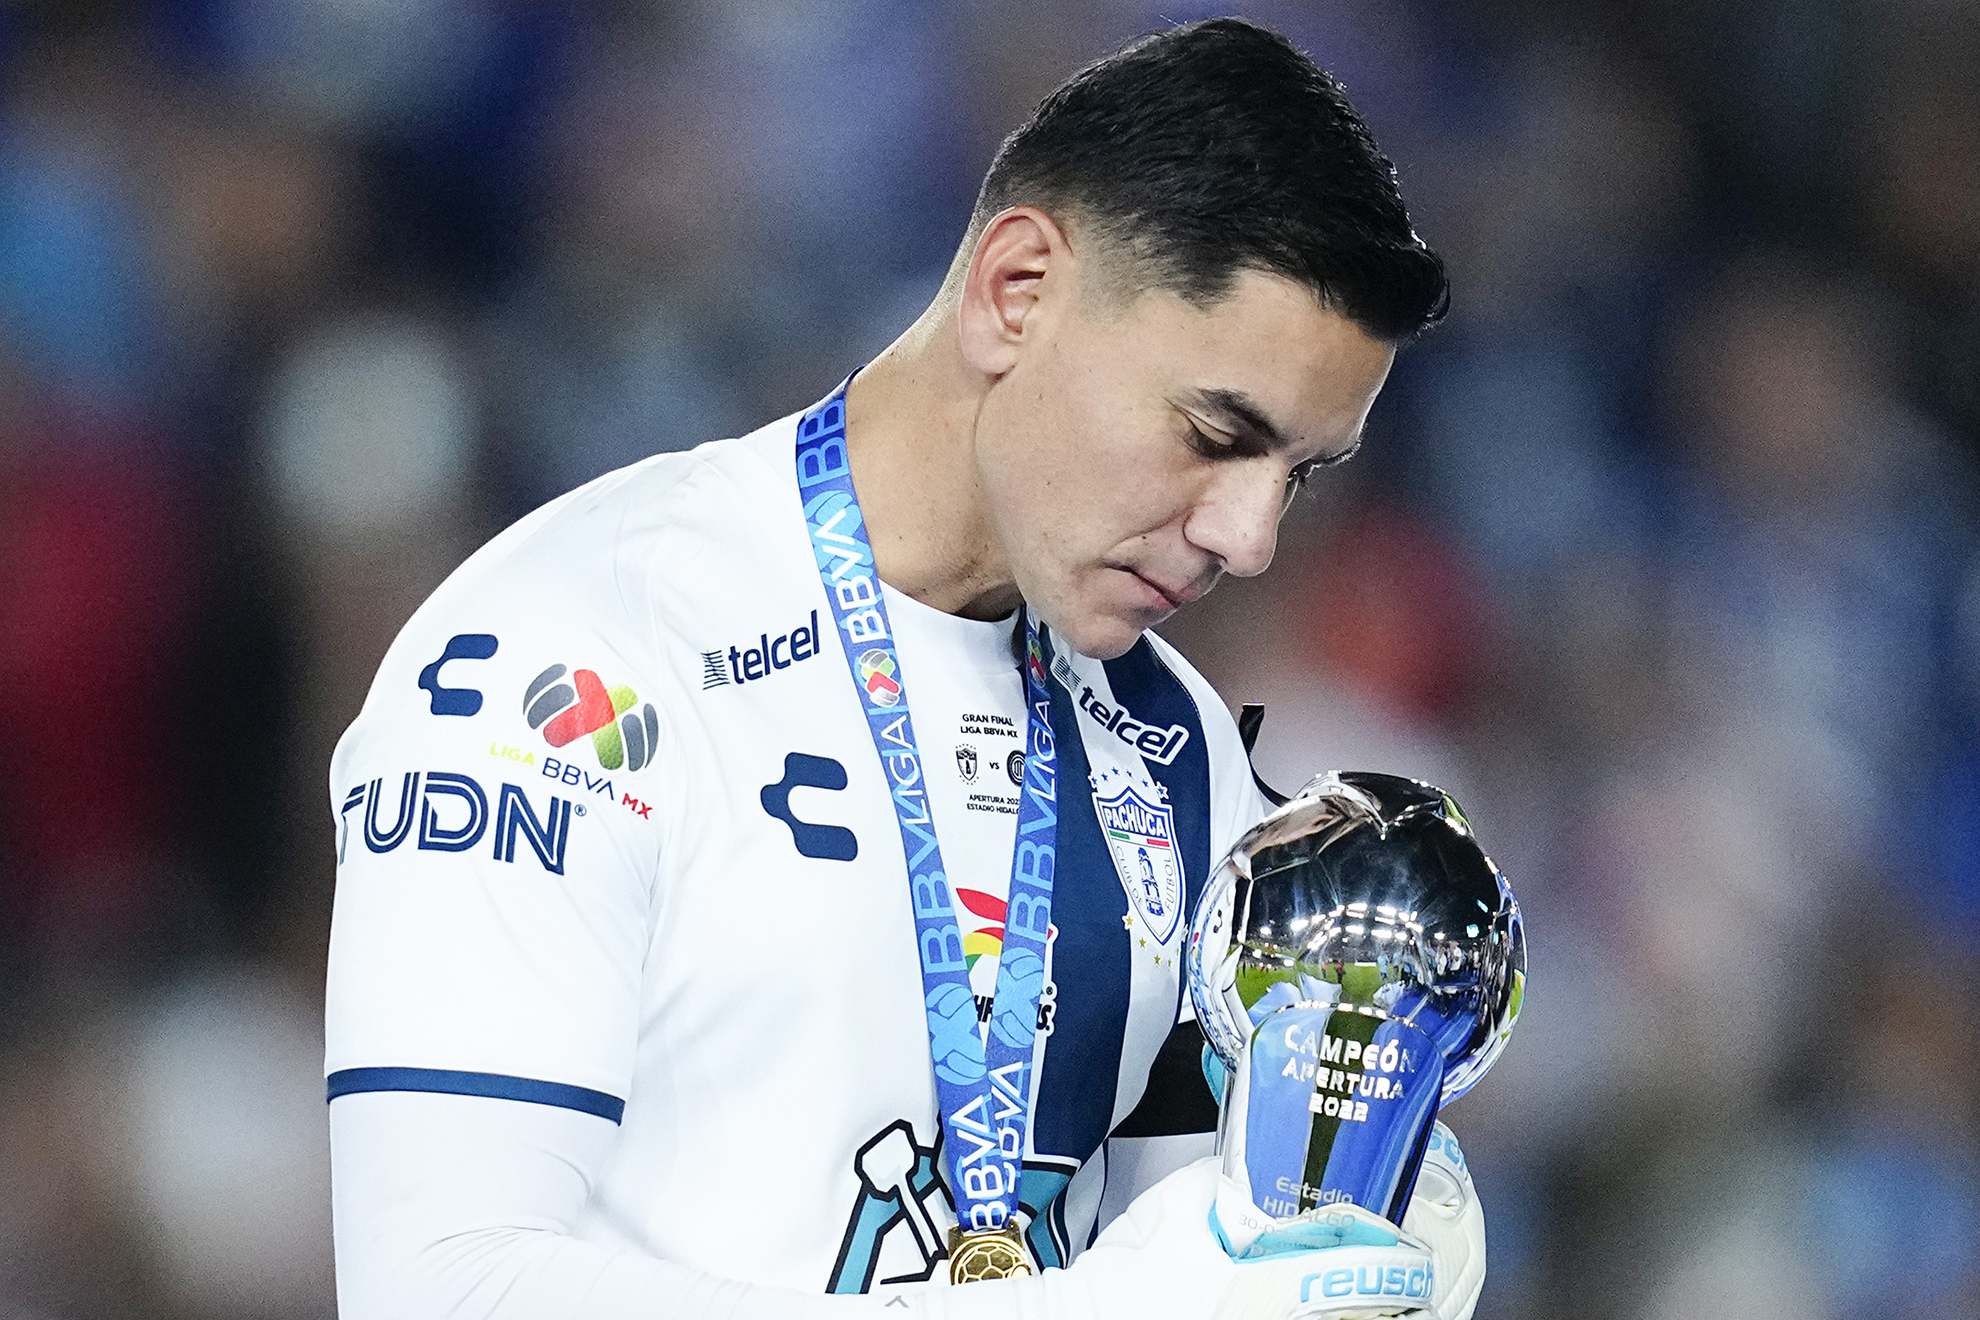 Ustari por fin consigue el título de liga en México | Imago7